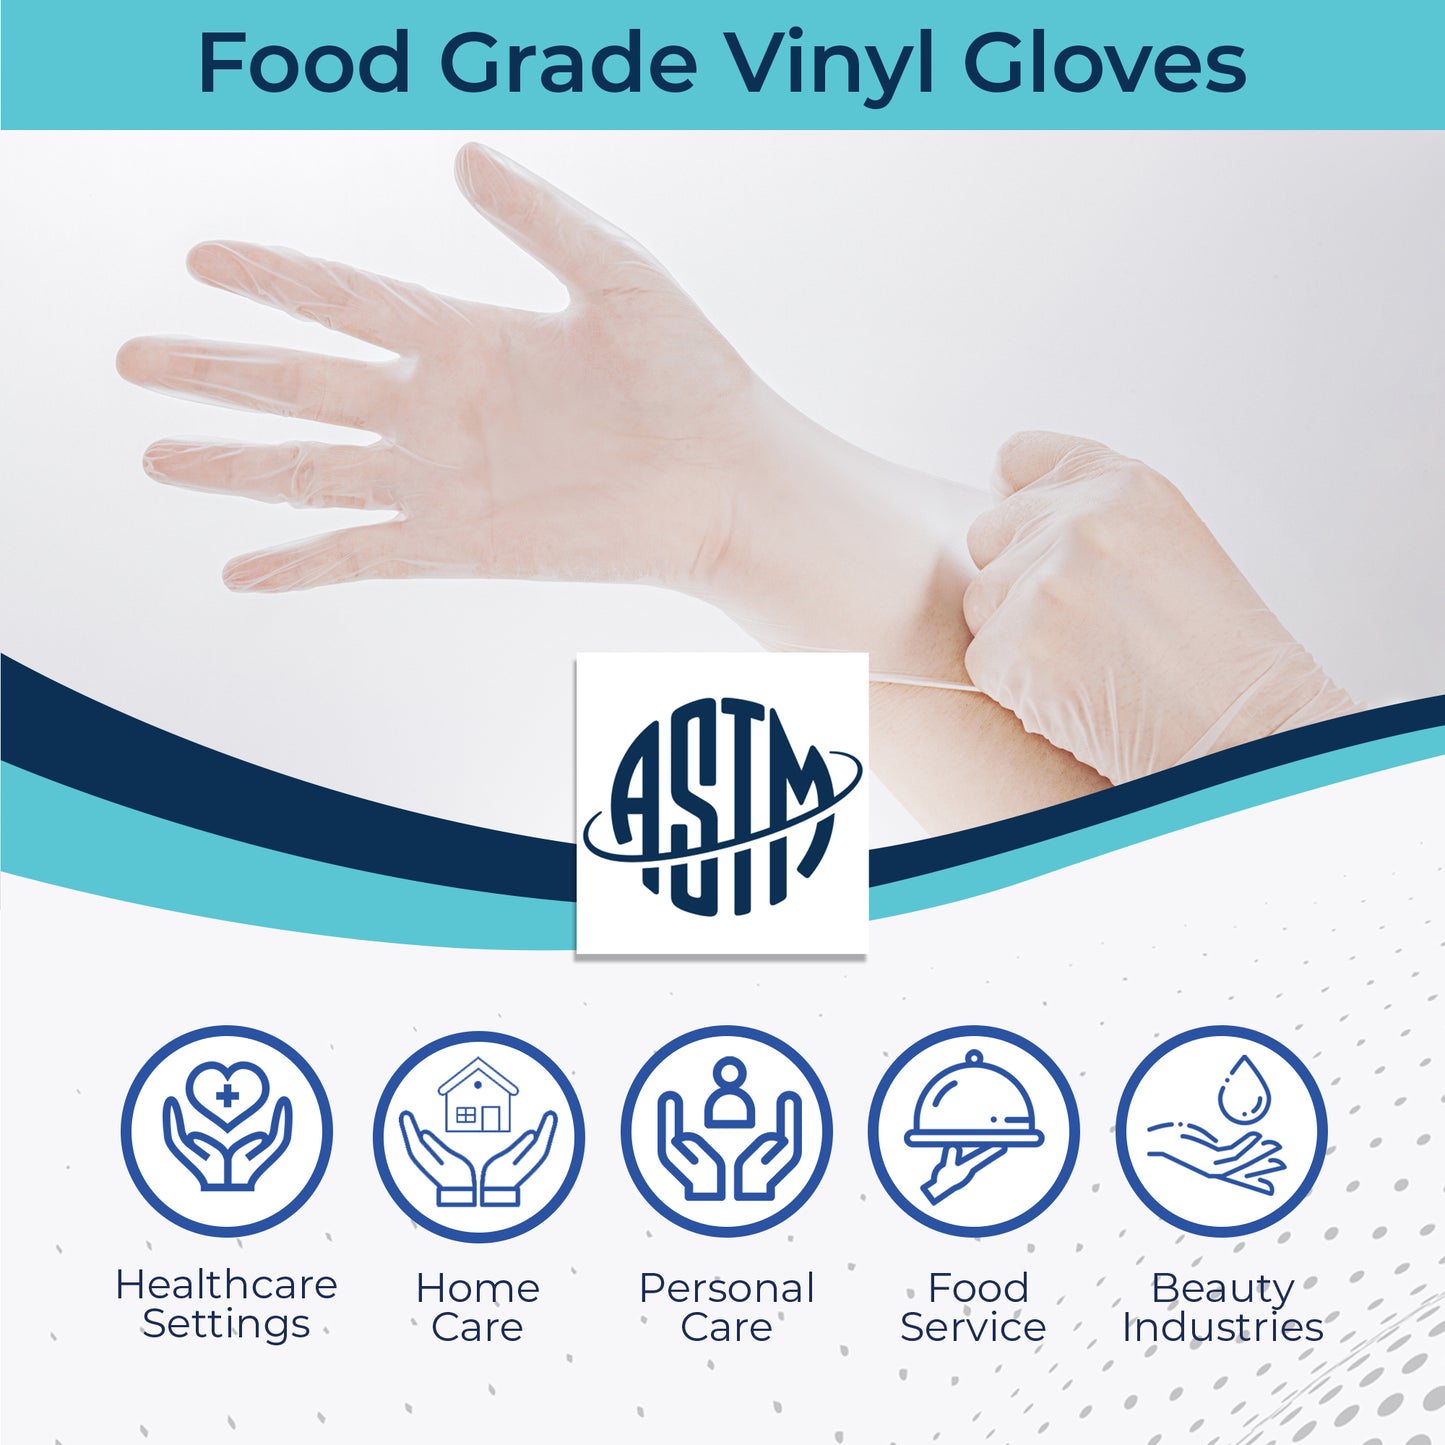 Vinyl Gloves for General or Food Grade Use